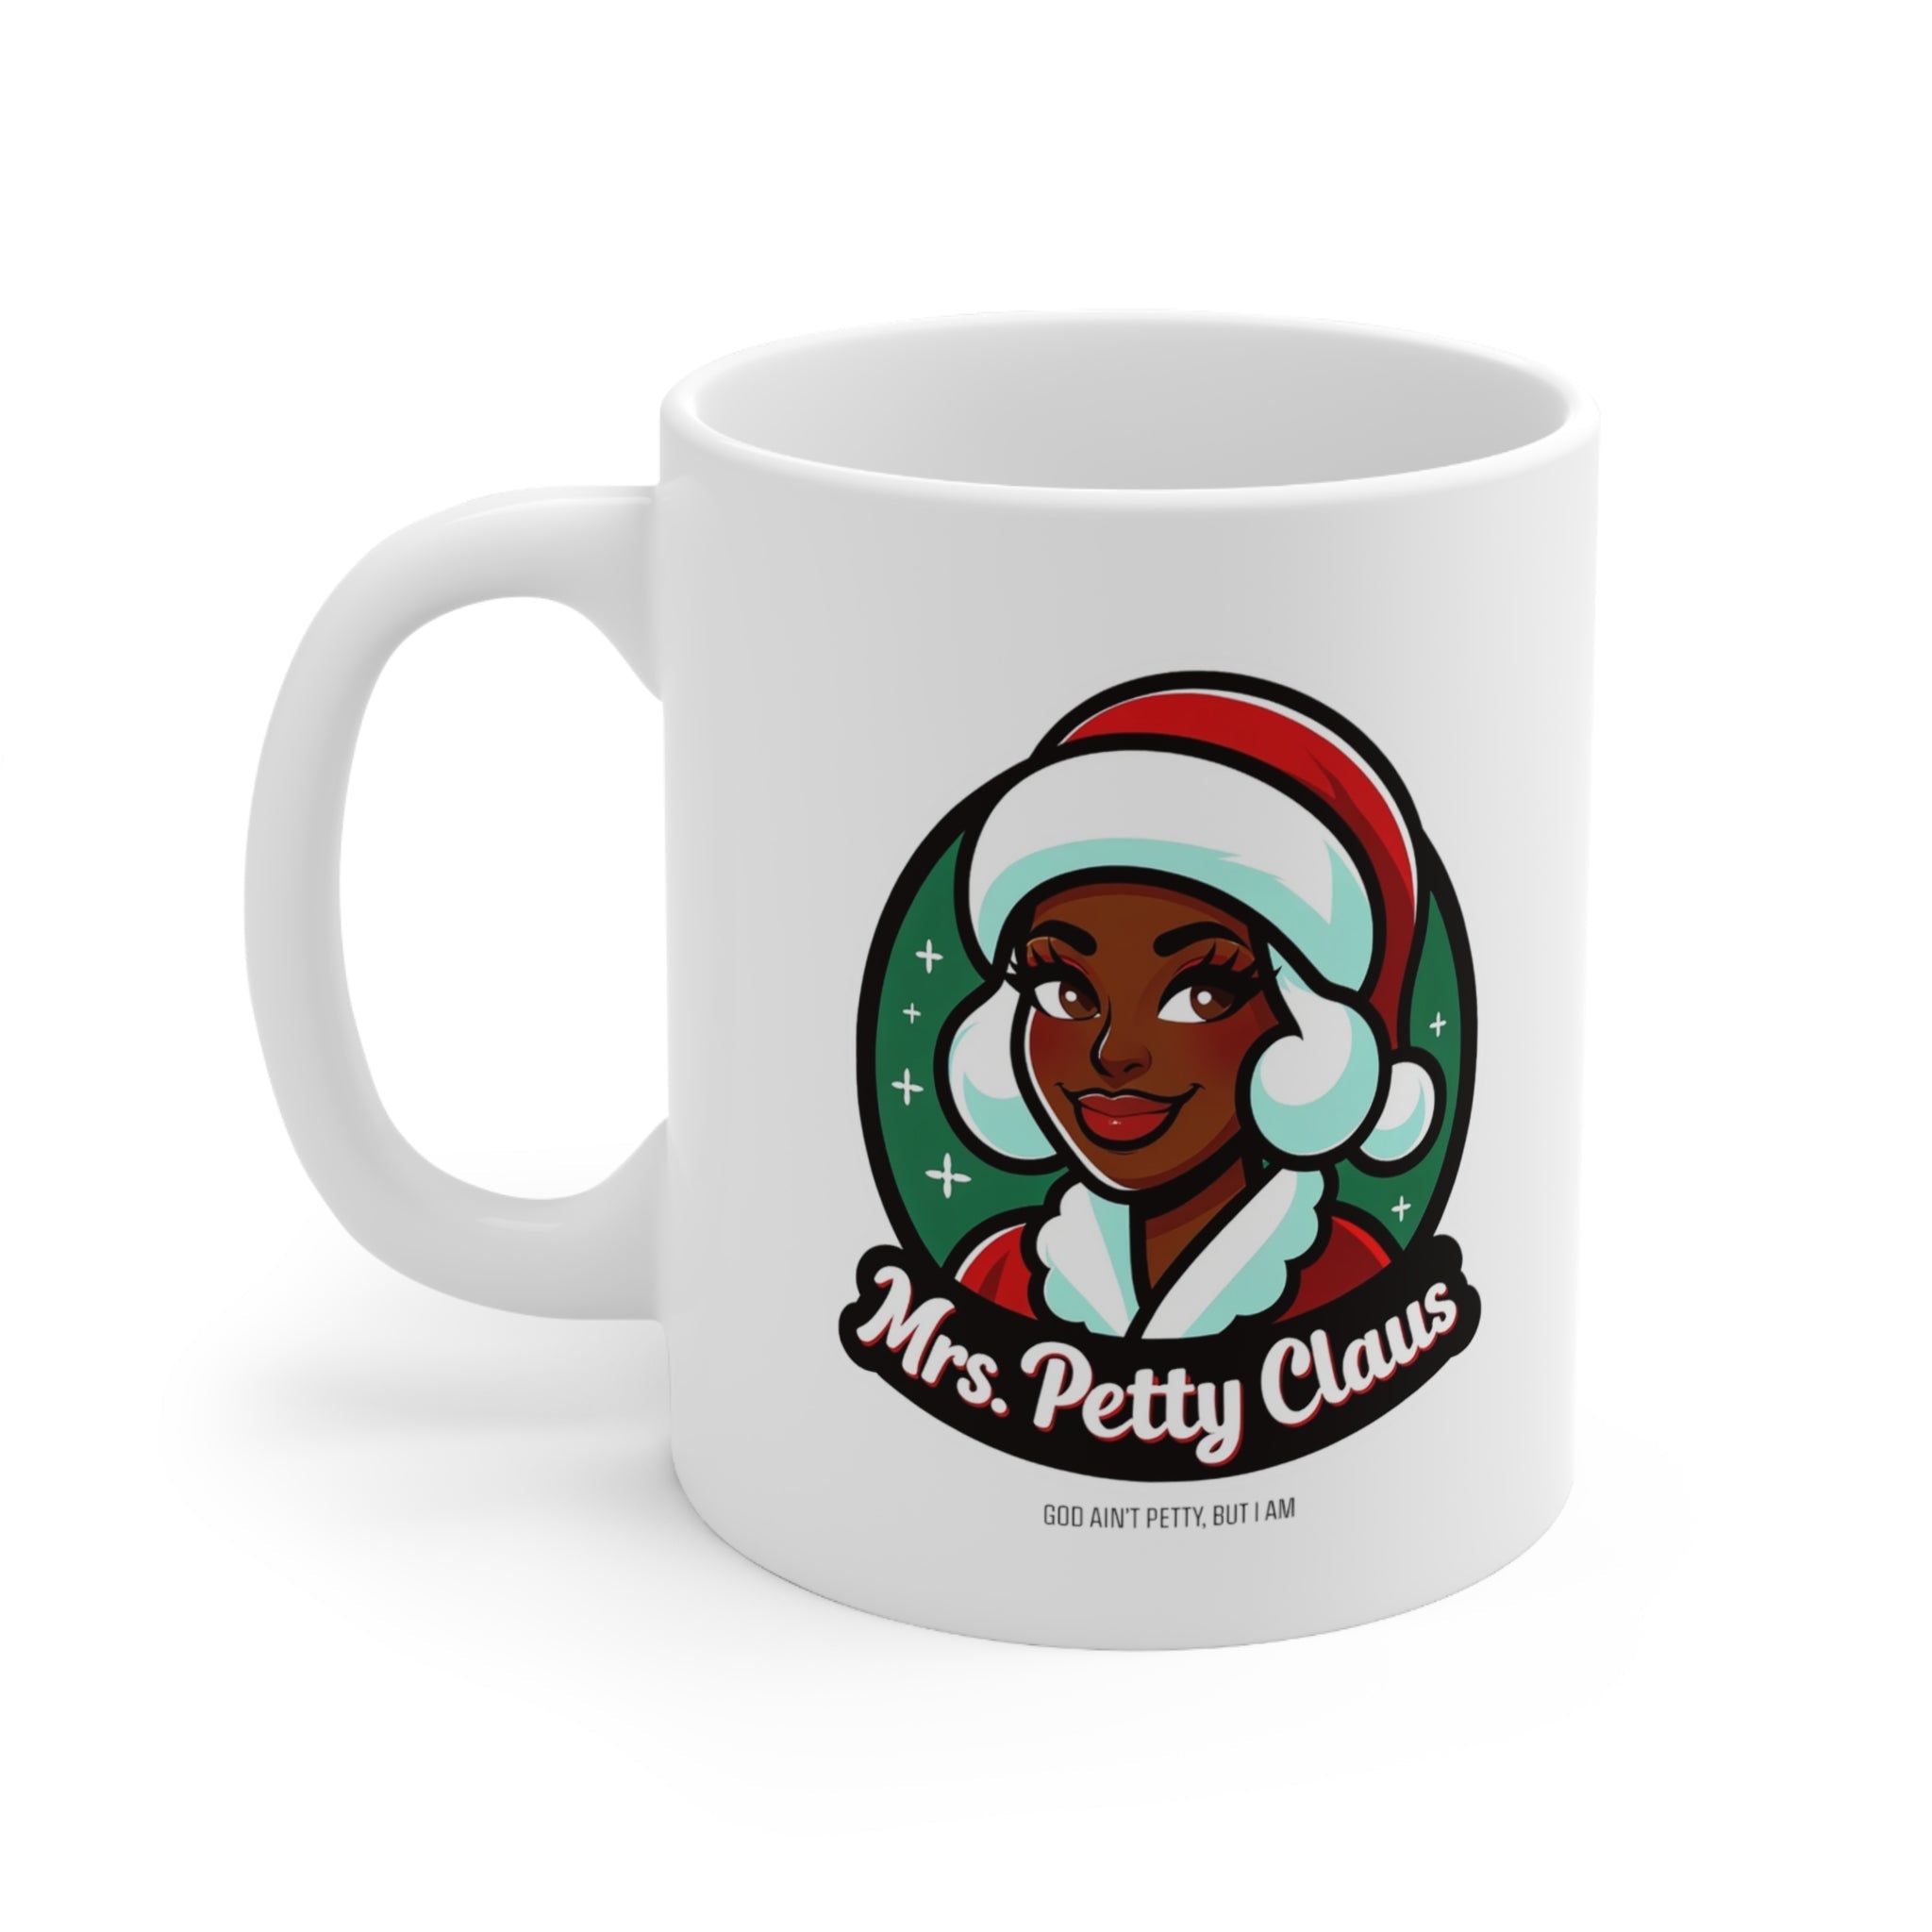 Mrs. Petty Claus Image Ceramic Mug 11oz-Mug-The Original God Ain't Petty But I Am